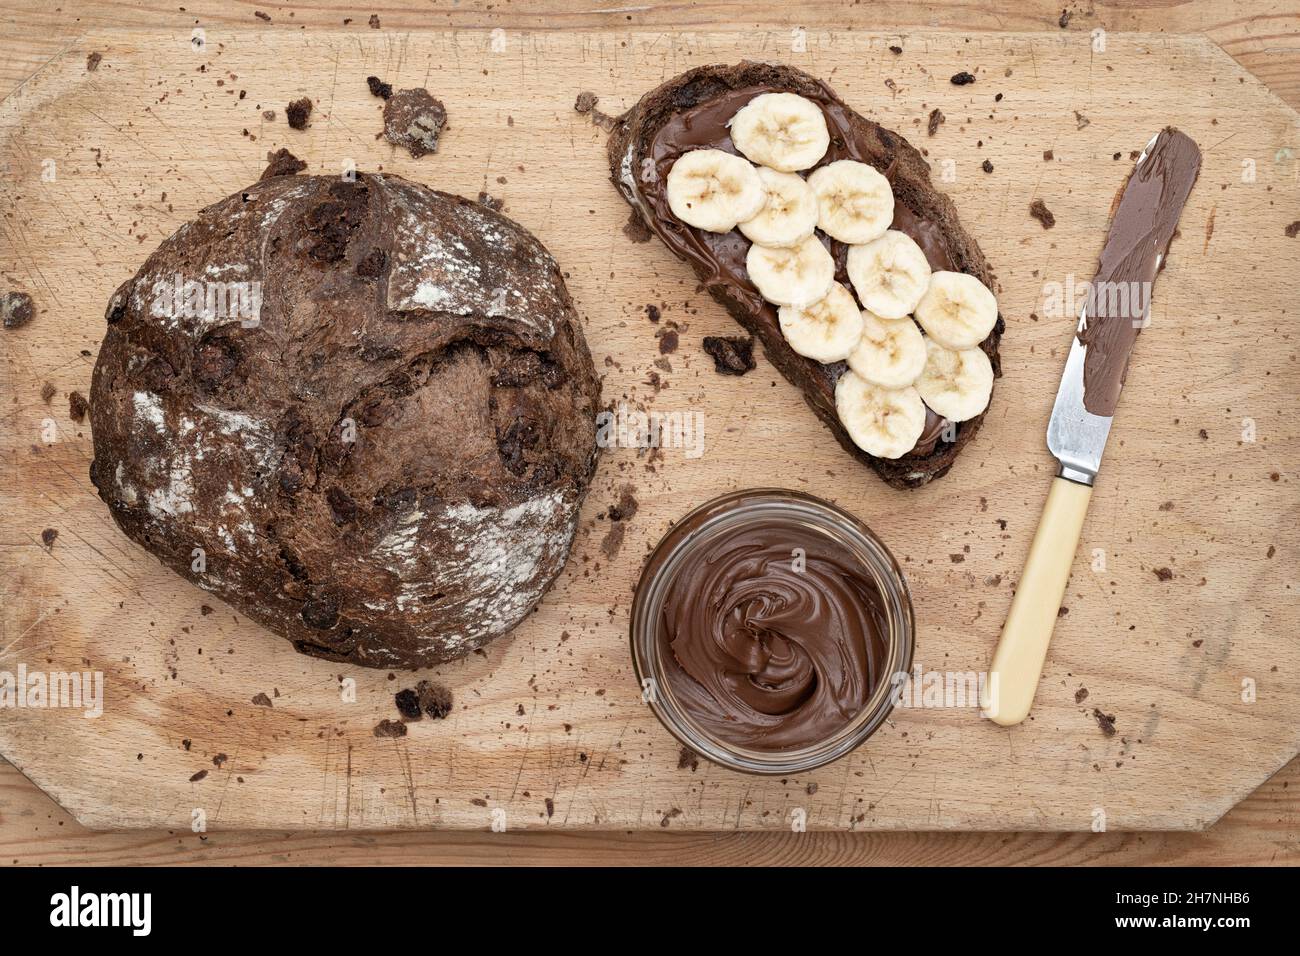 Pane di pasta al cioccolato con crema di nocciole al cioccolato e banana affettata su un asse di legno Foto Stock